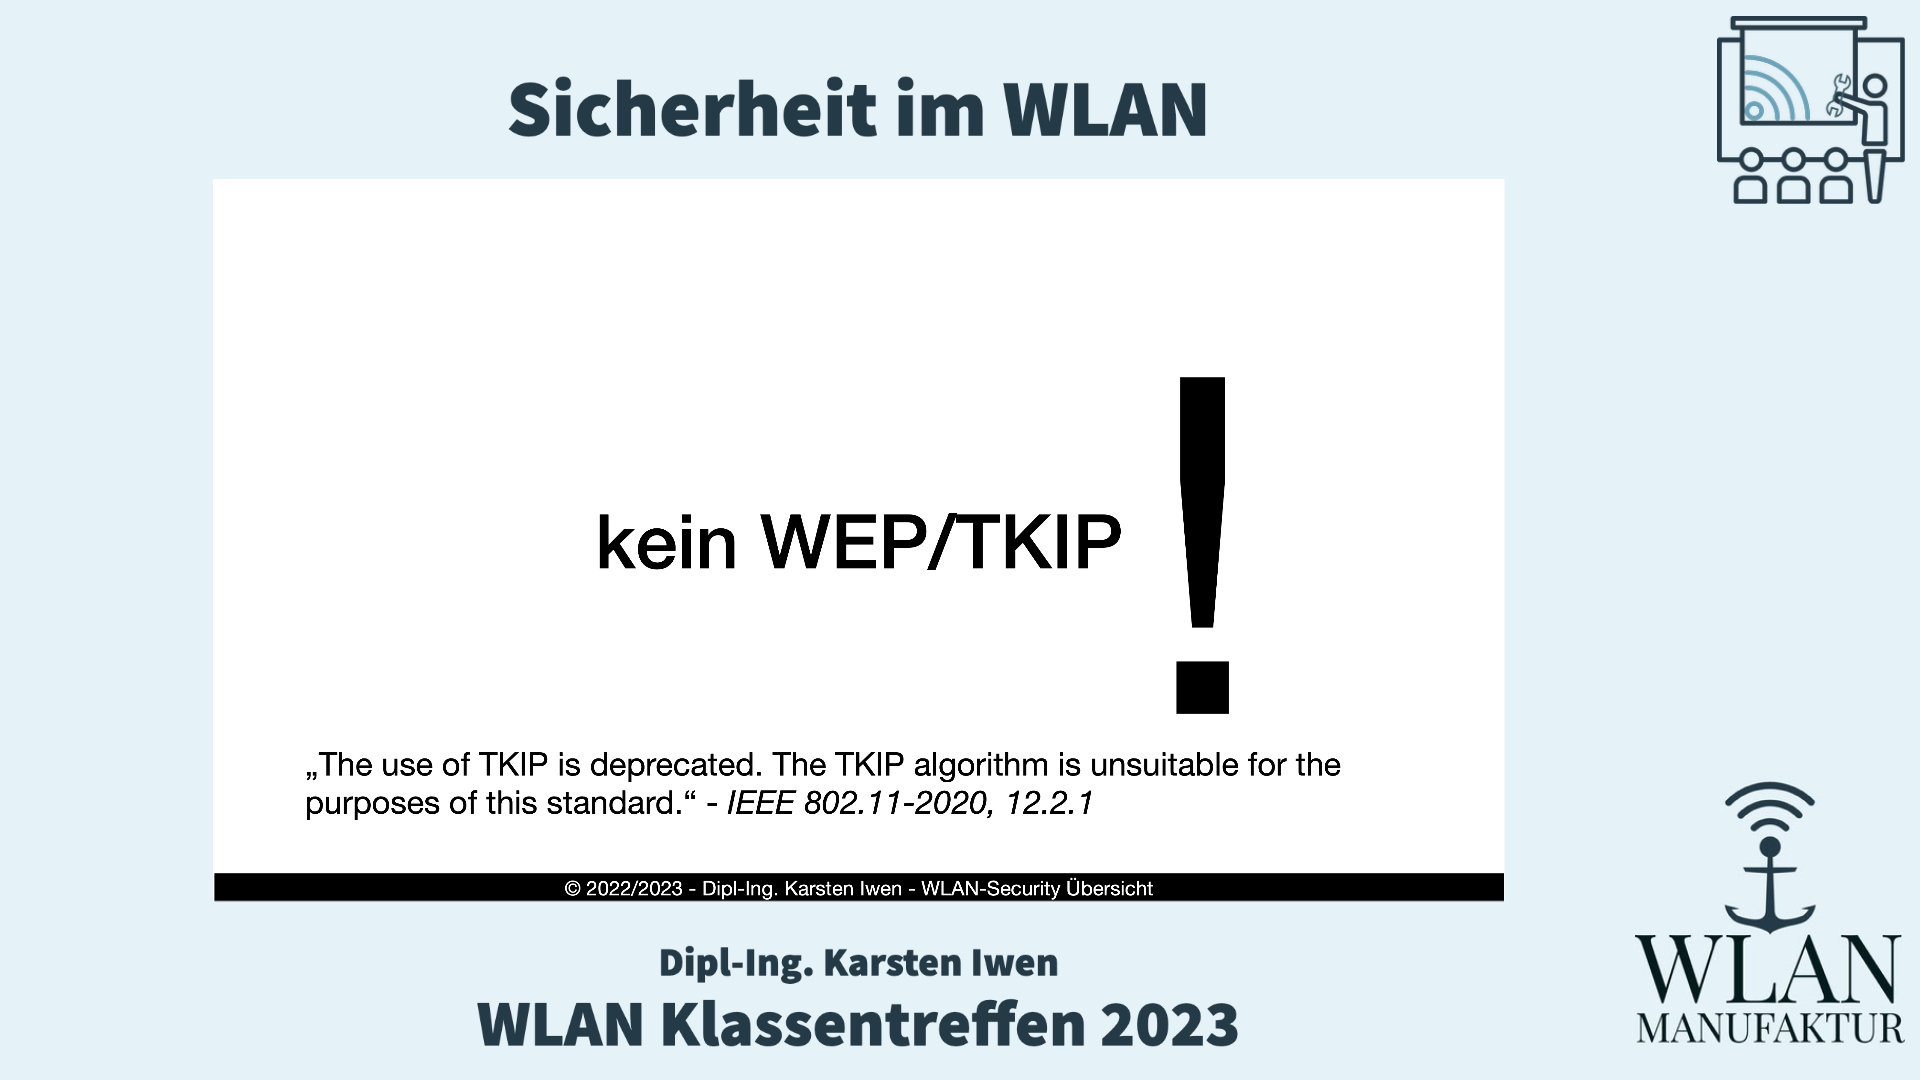 Load video: Aufzeichnung der Präsentation vom WLAN Klassentreffen - Sicherheit im WLAN